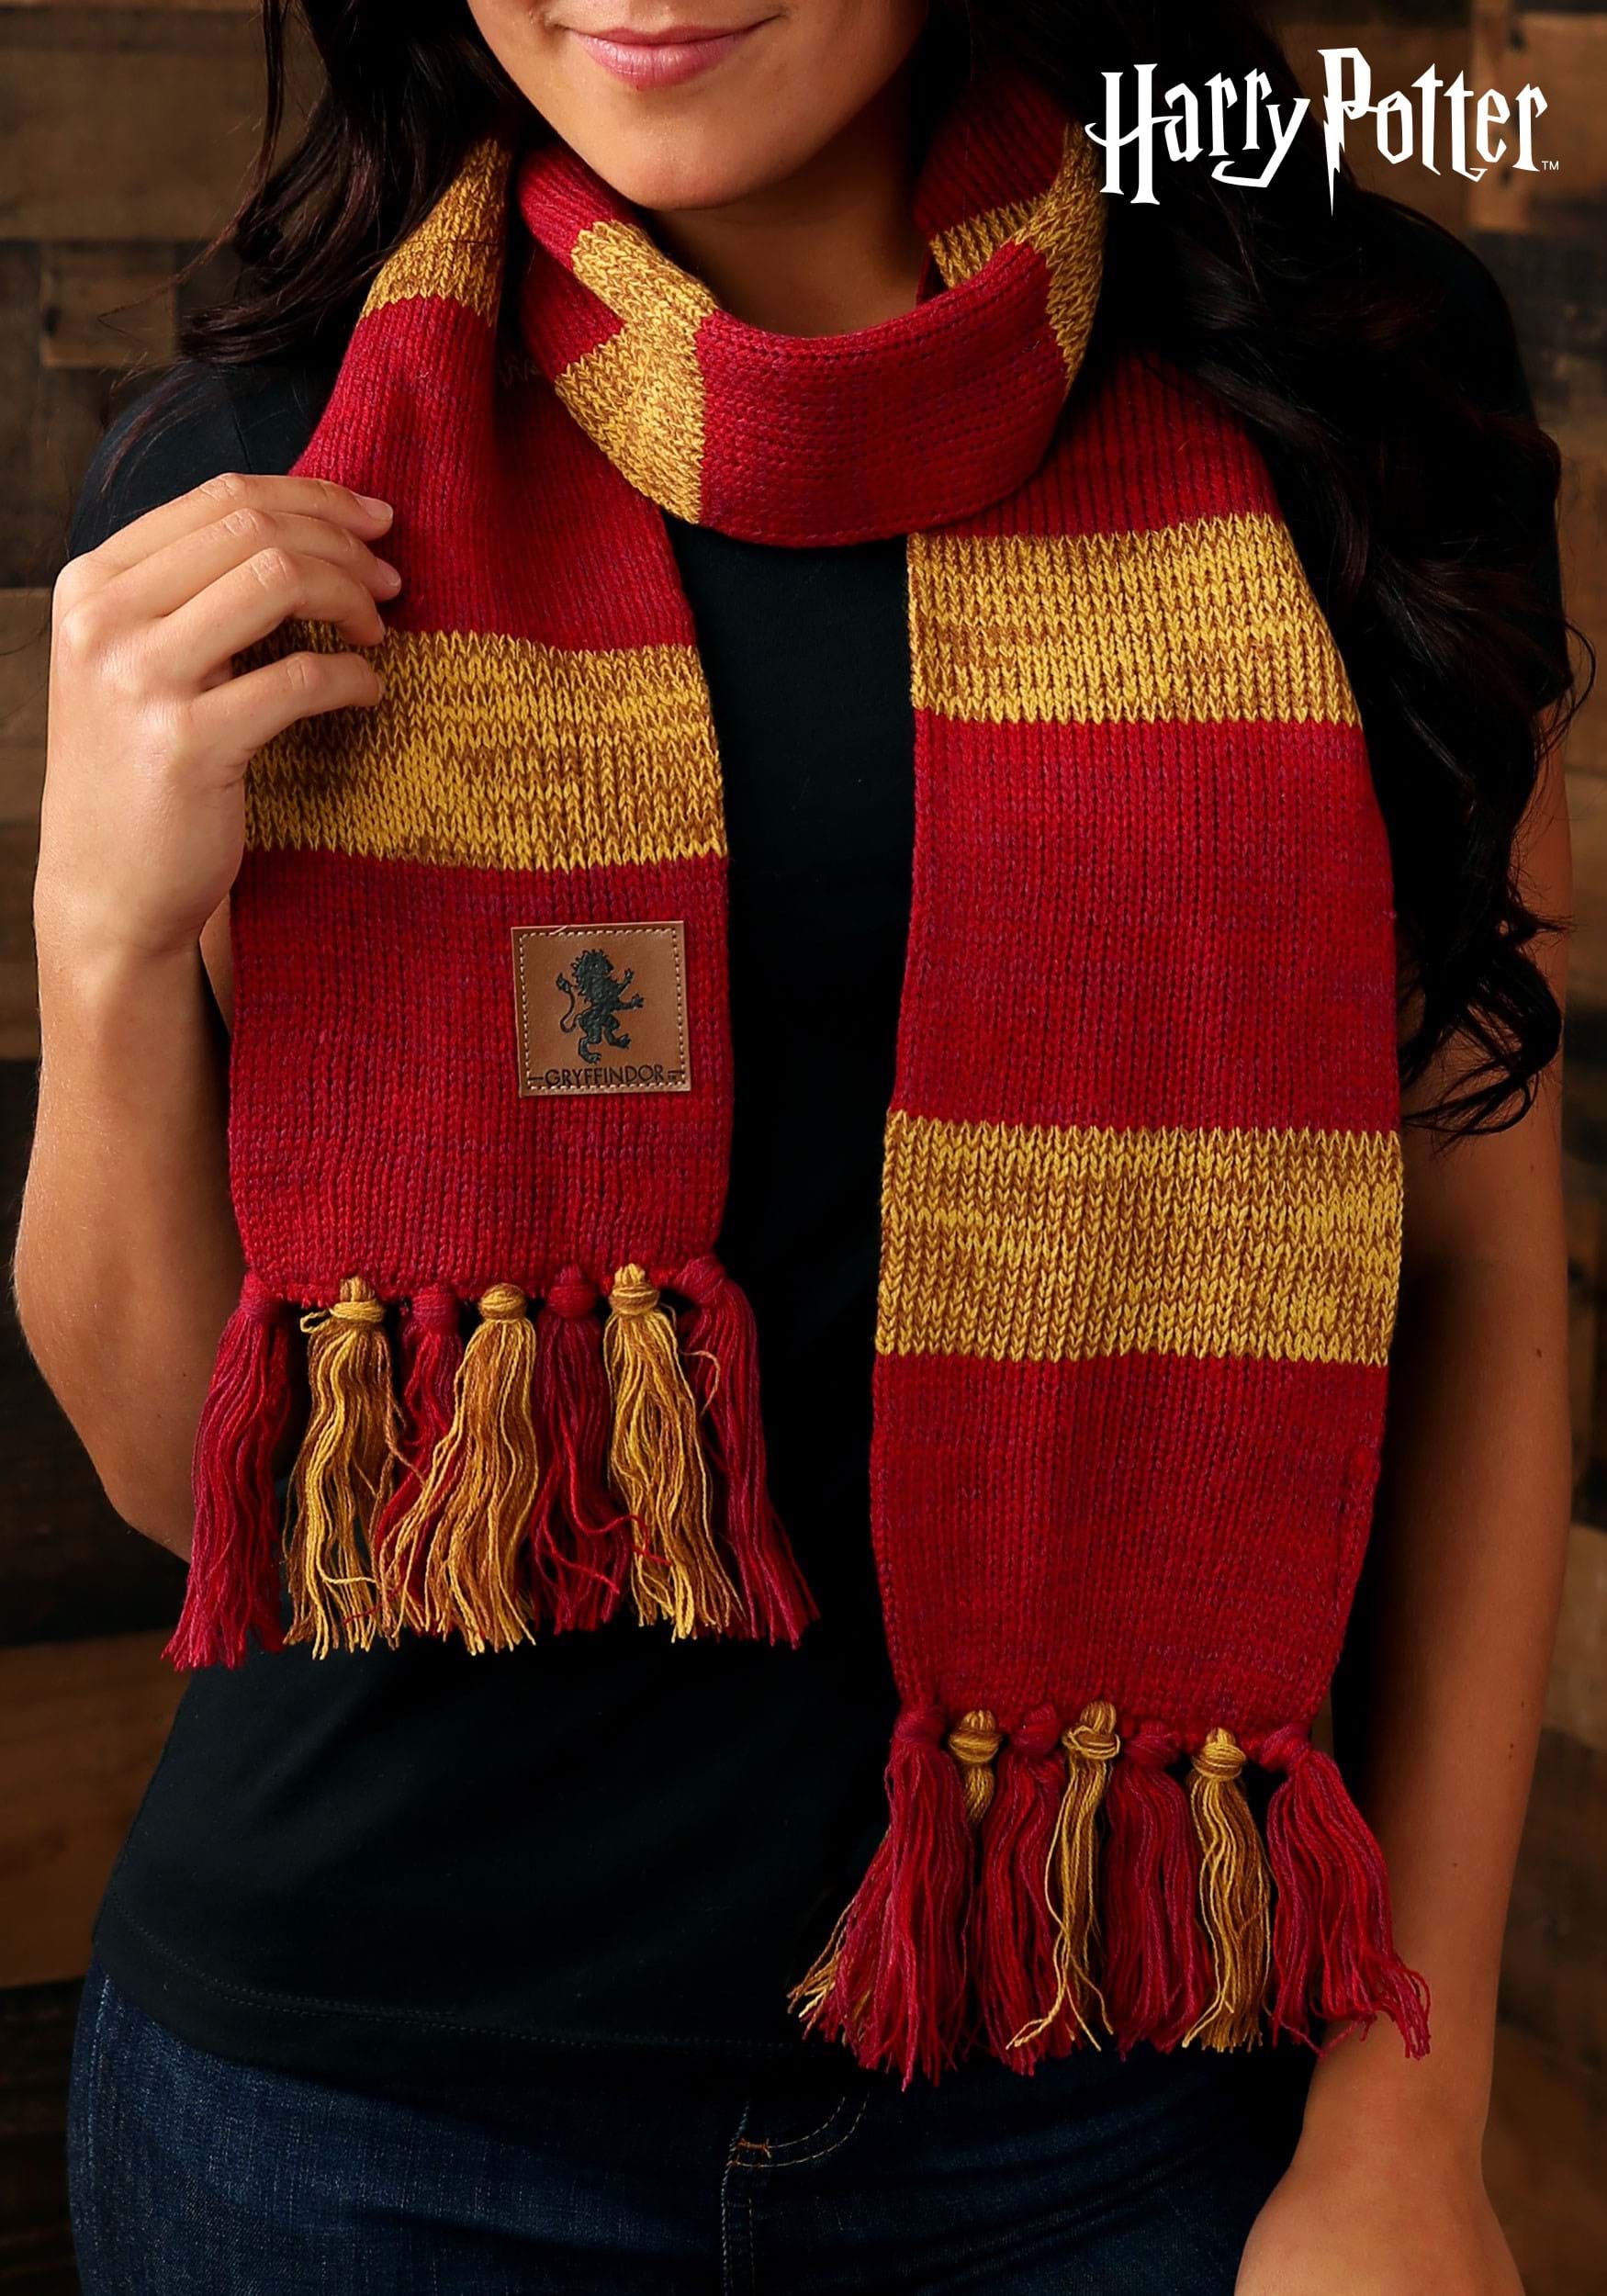 6968円 公式 Official Harry Potter Towel Hogwarts Houses Design Super Soft Feel 100%